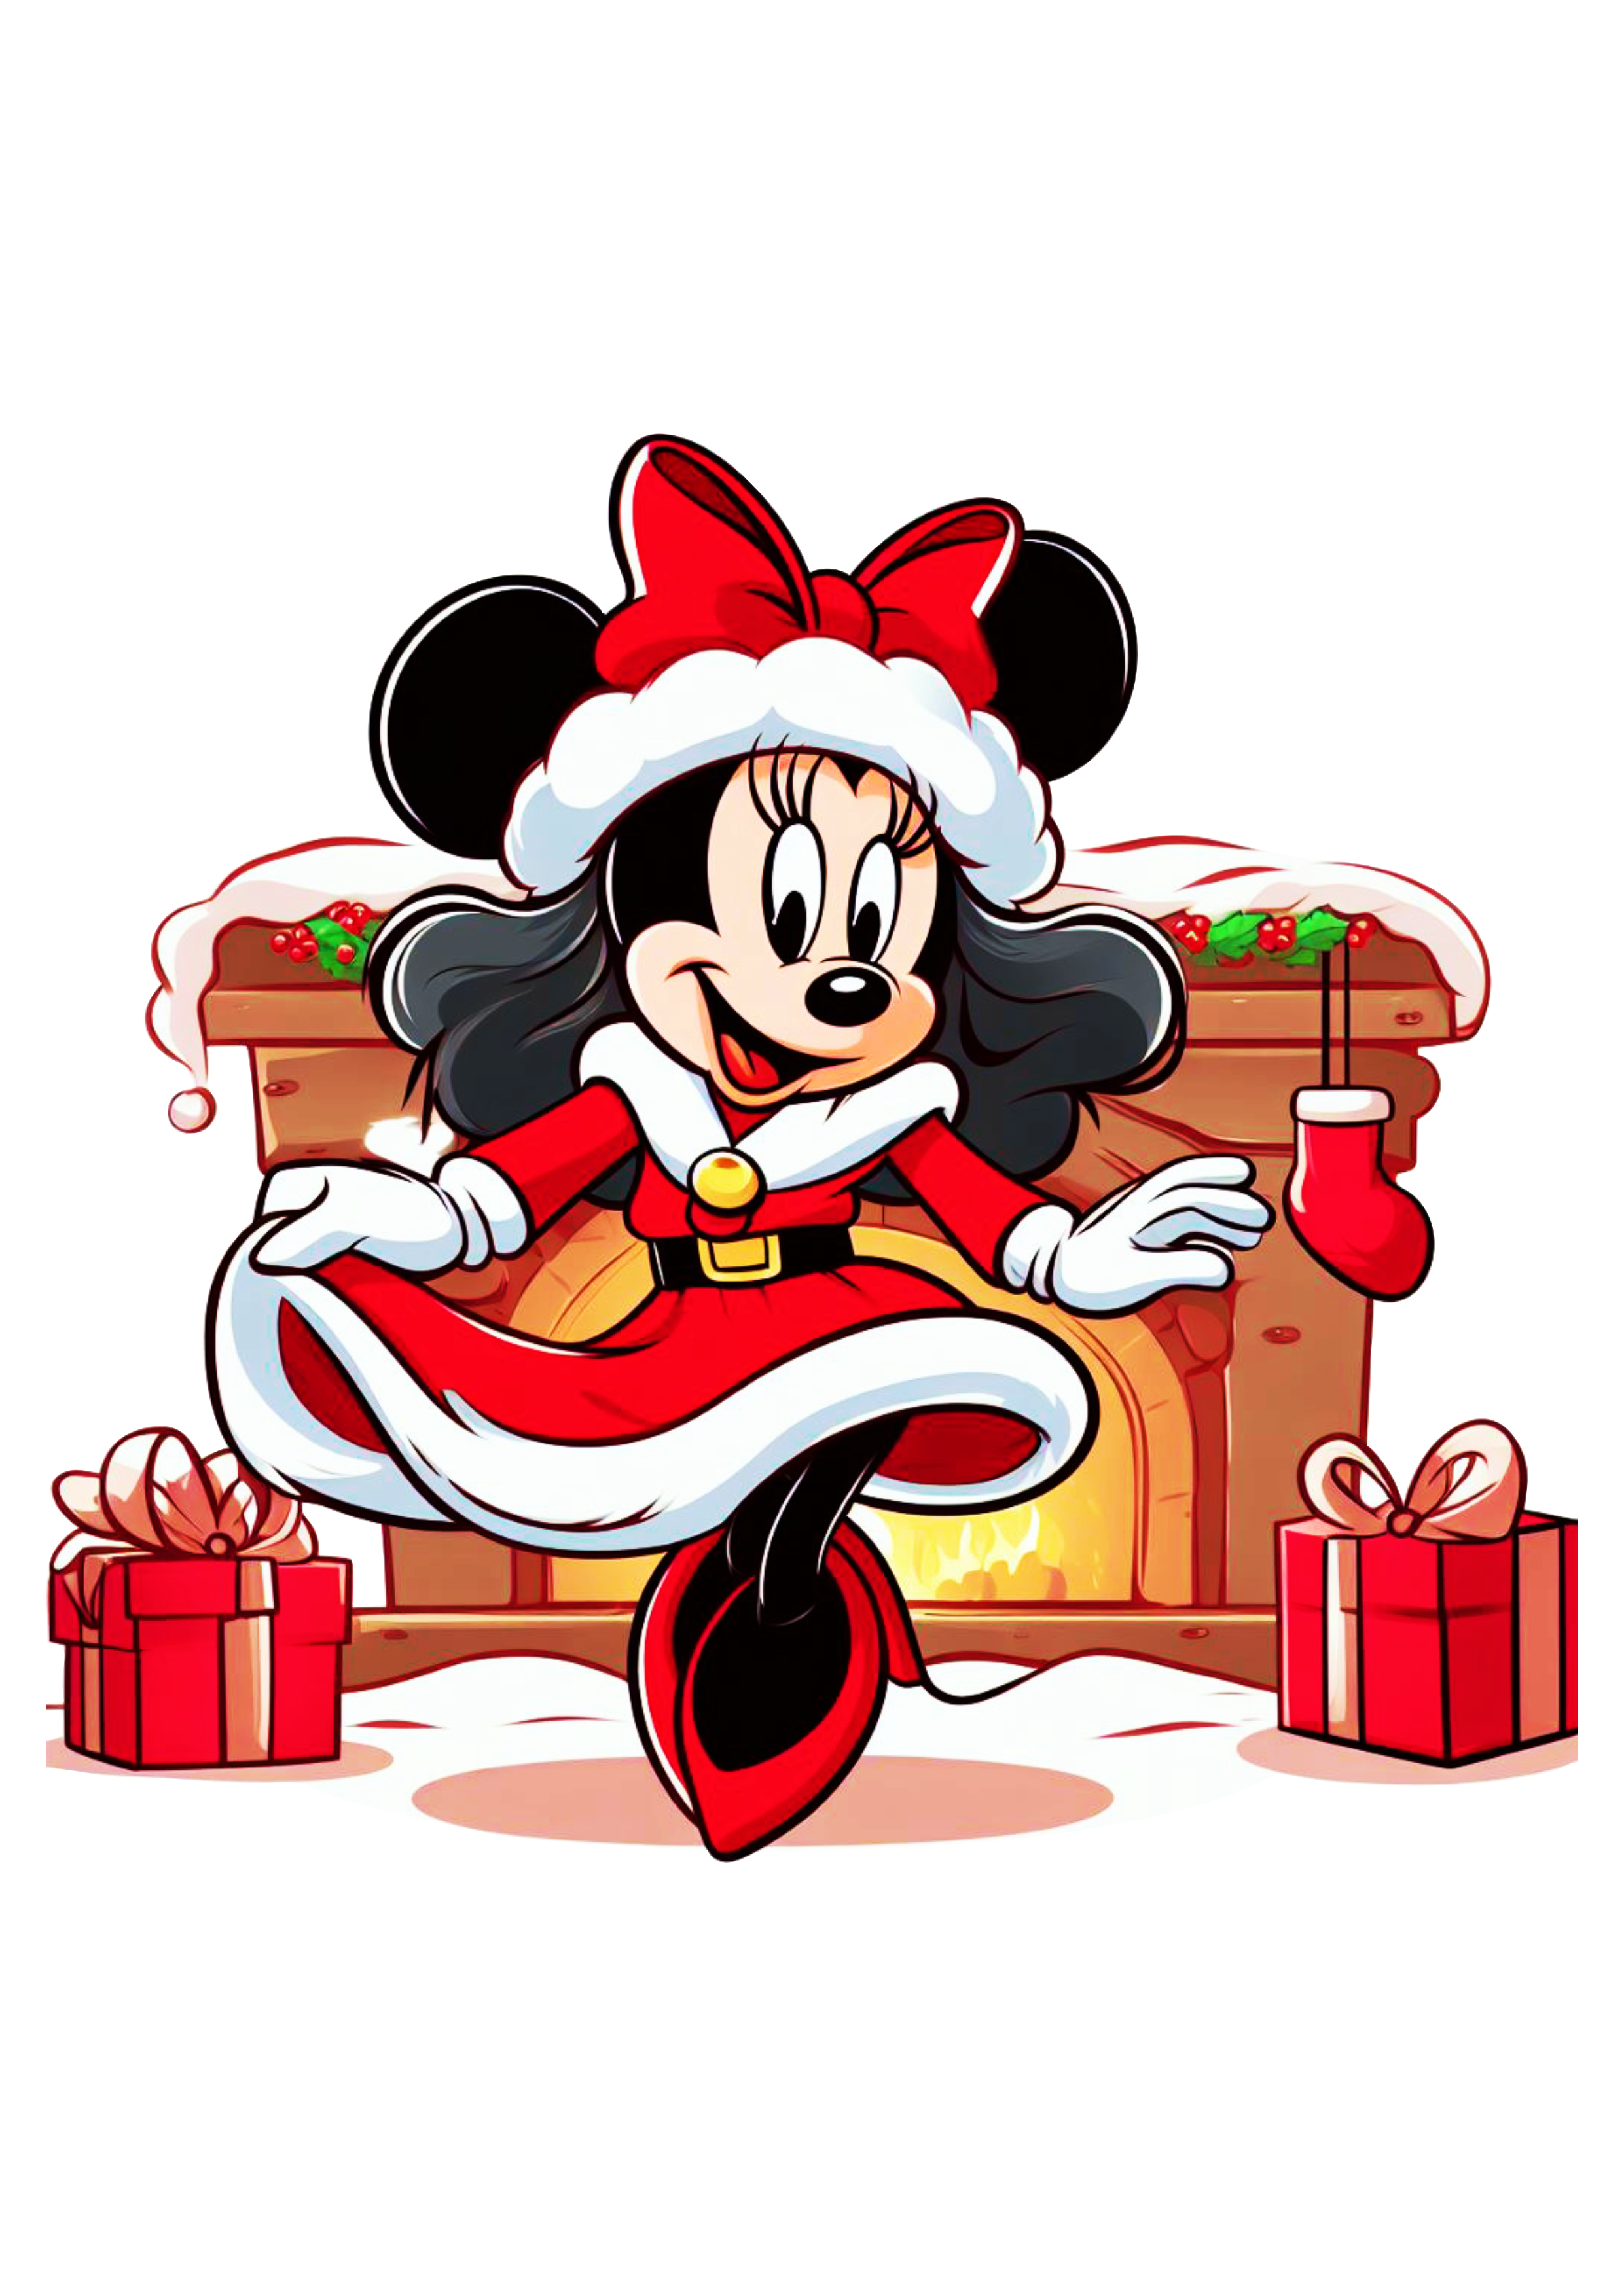 Minnie Mouse vermelha com vestido de natal desenho infantil disney png